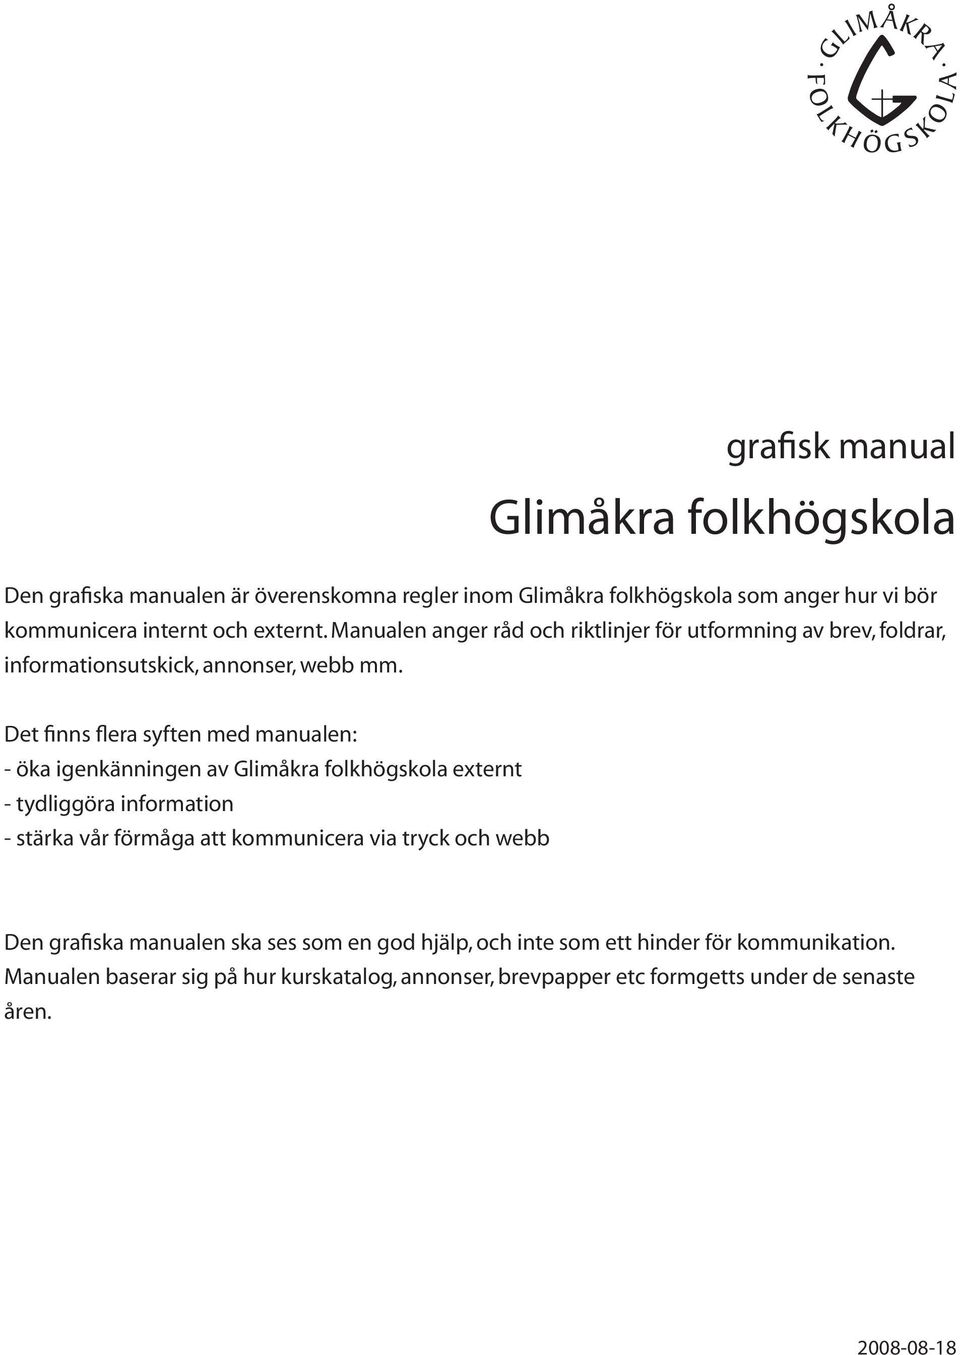 Det finns flera syften med manualen: - öka igenkänningen av Glimåkra folkhögskola externt - tydliggöra information - stärka vår förmåga att kommunicera via